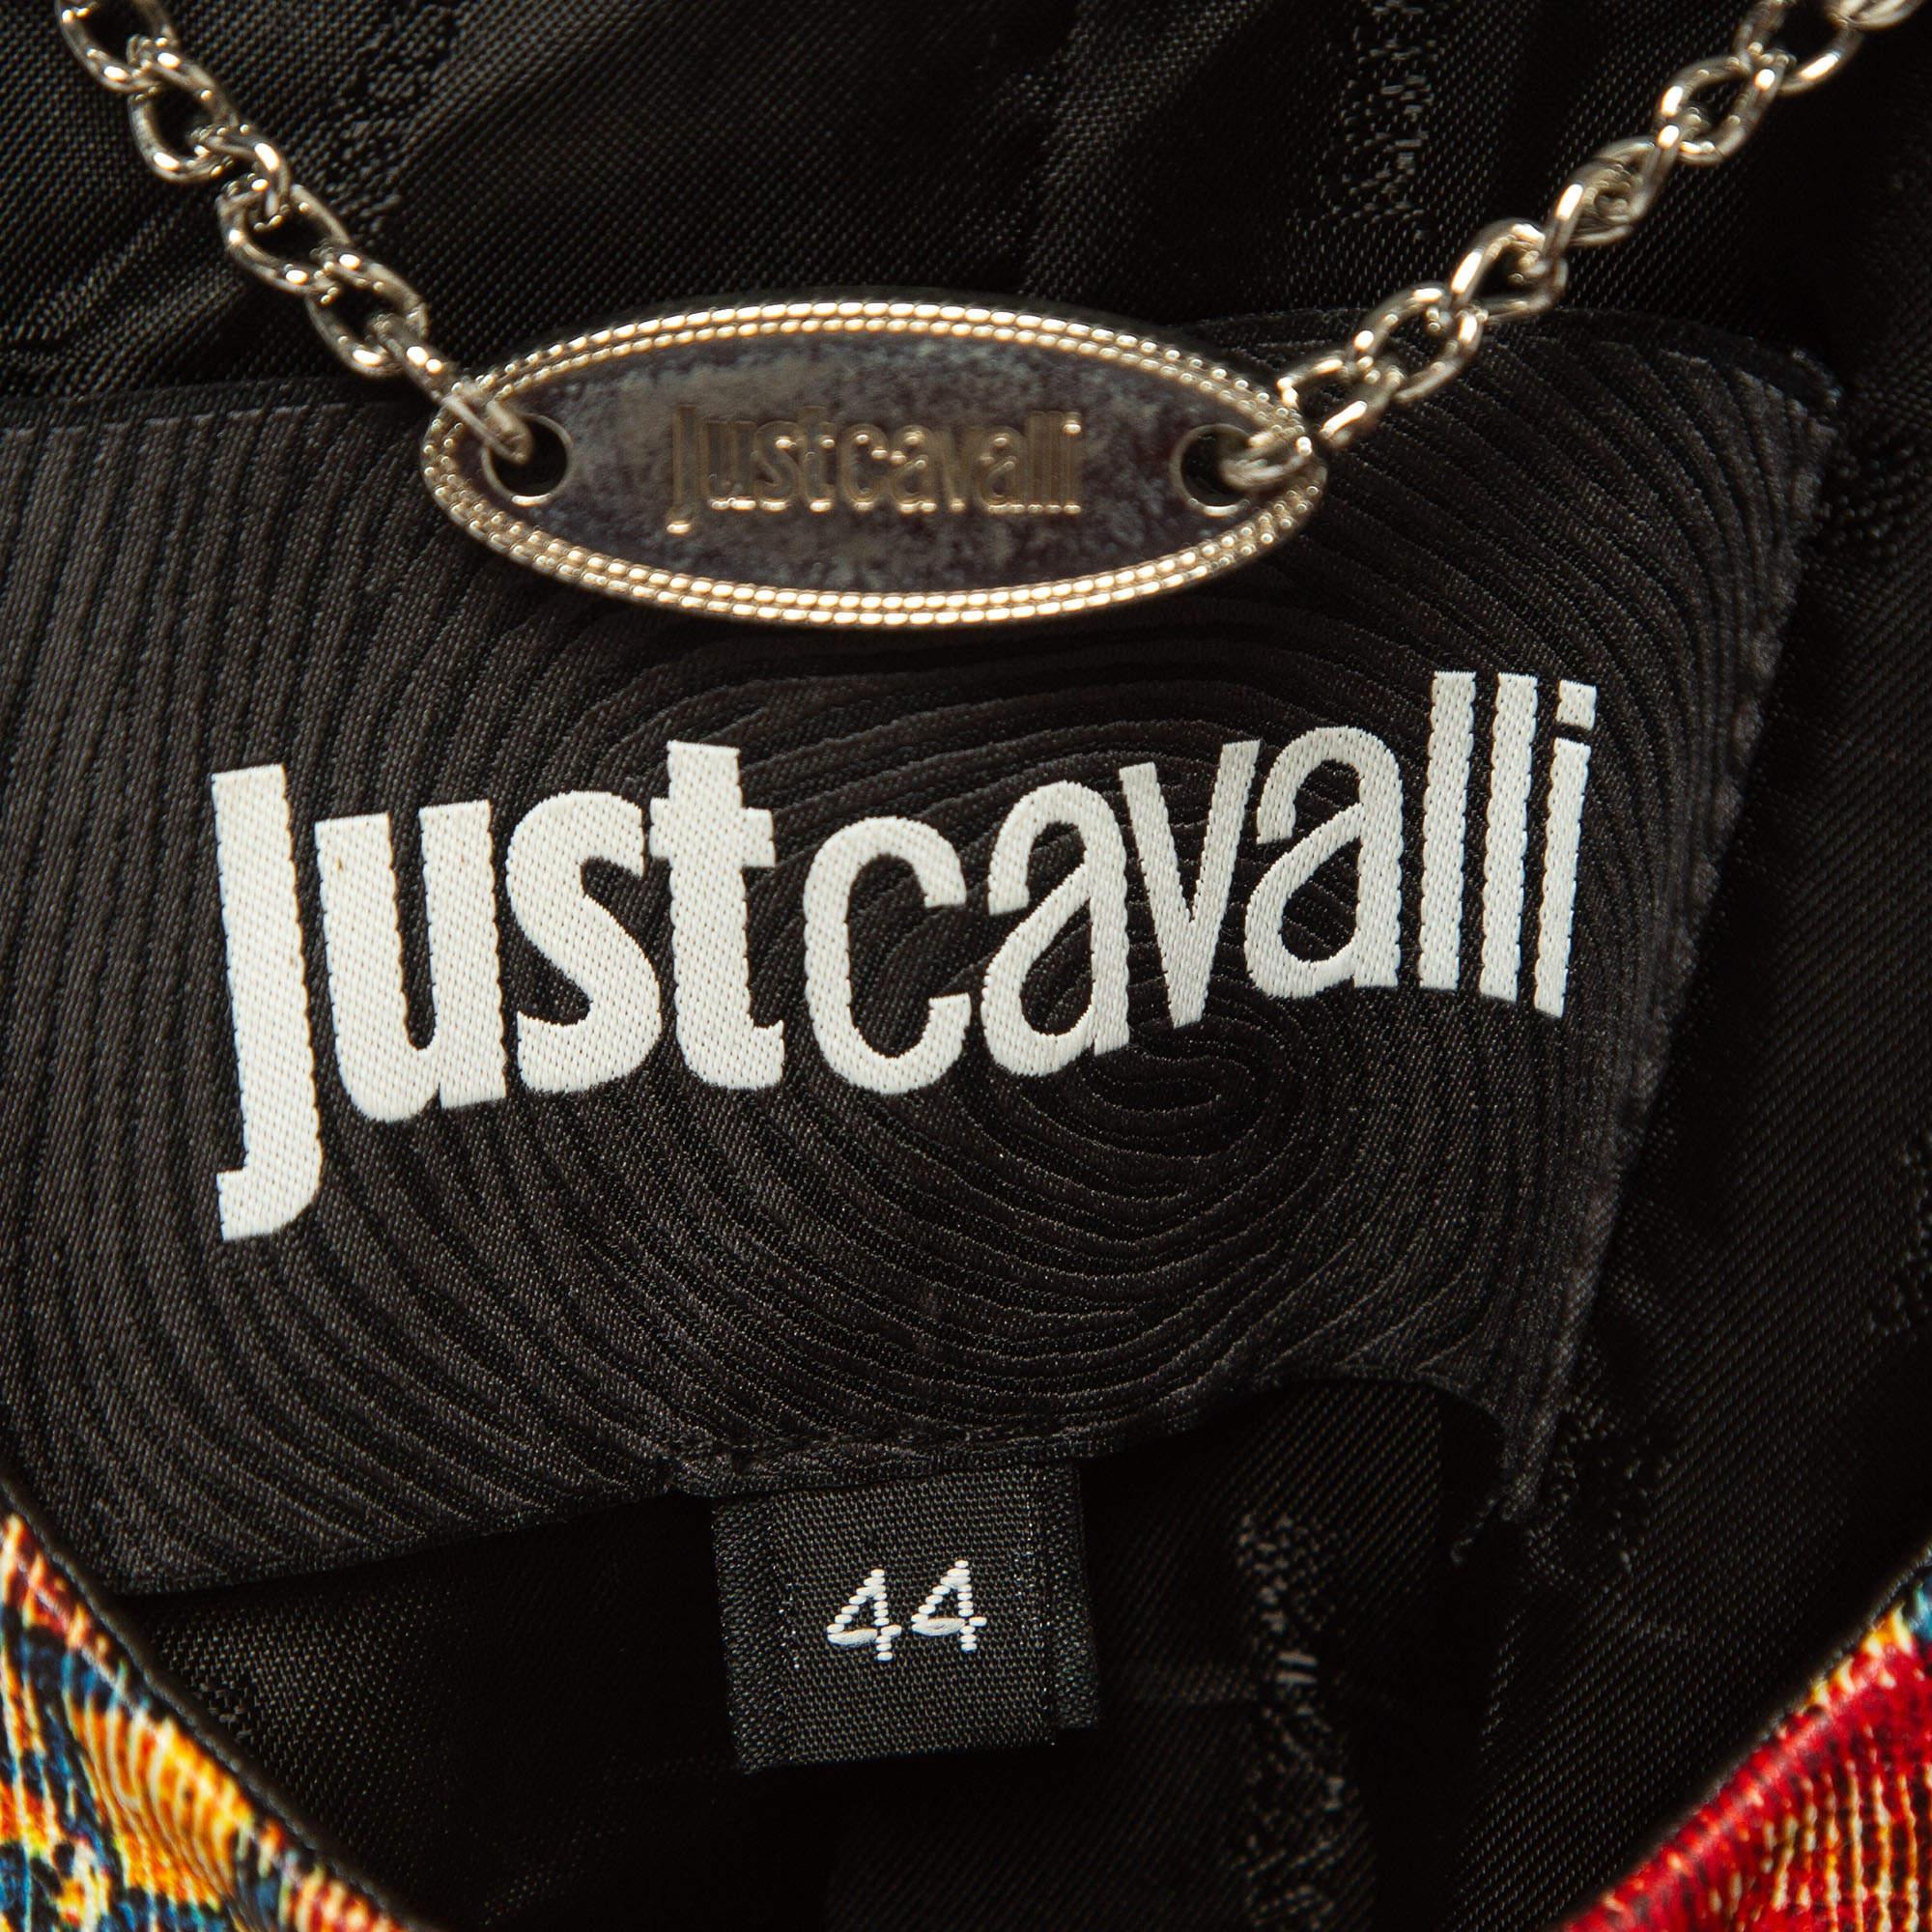 Erhöhen Sie Ihren Stil mit der Just Cavalli Jacke. Sie ist aus luxuriösem Leder gefertigt und strahlt mit ihren aufwendigen Drucken urbane Raffinesse aus. Dieses Stück vereint kantige Details mit raffinierter Eleganz und bietet einen Statement-Look,